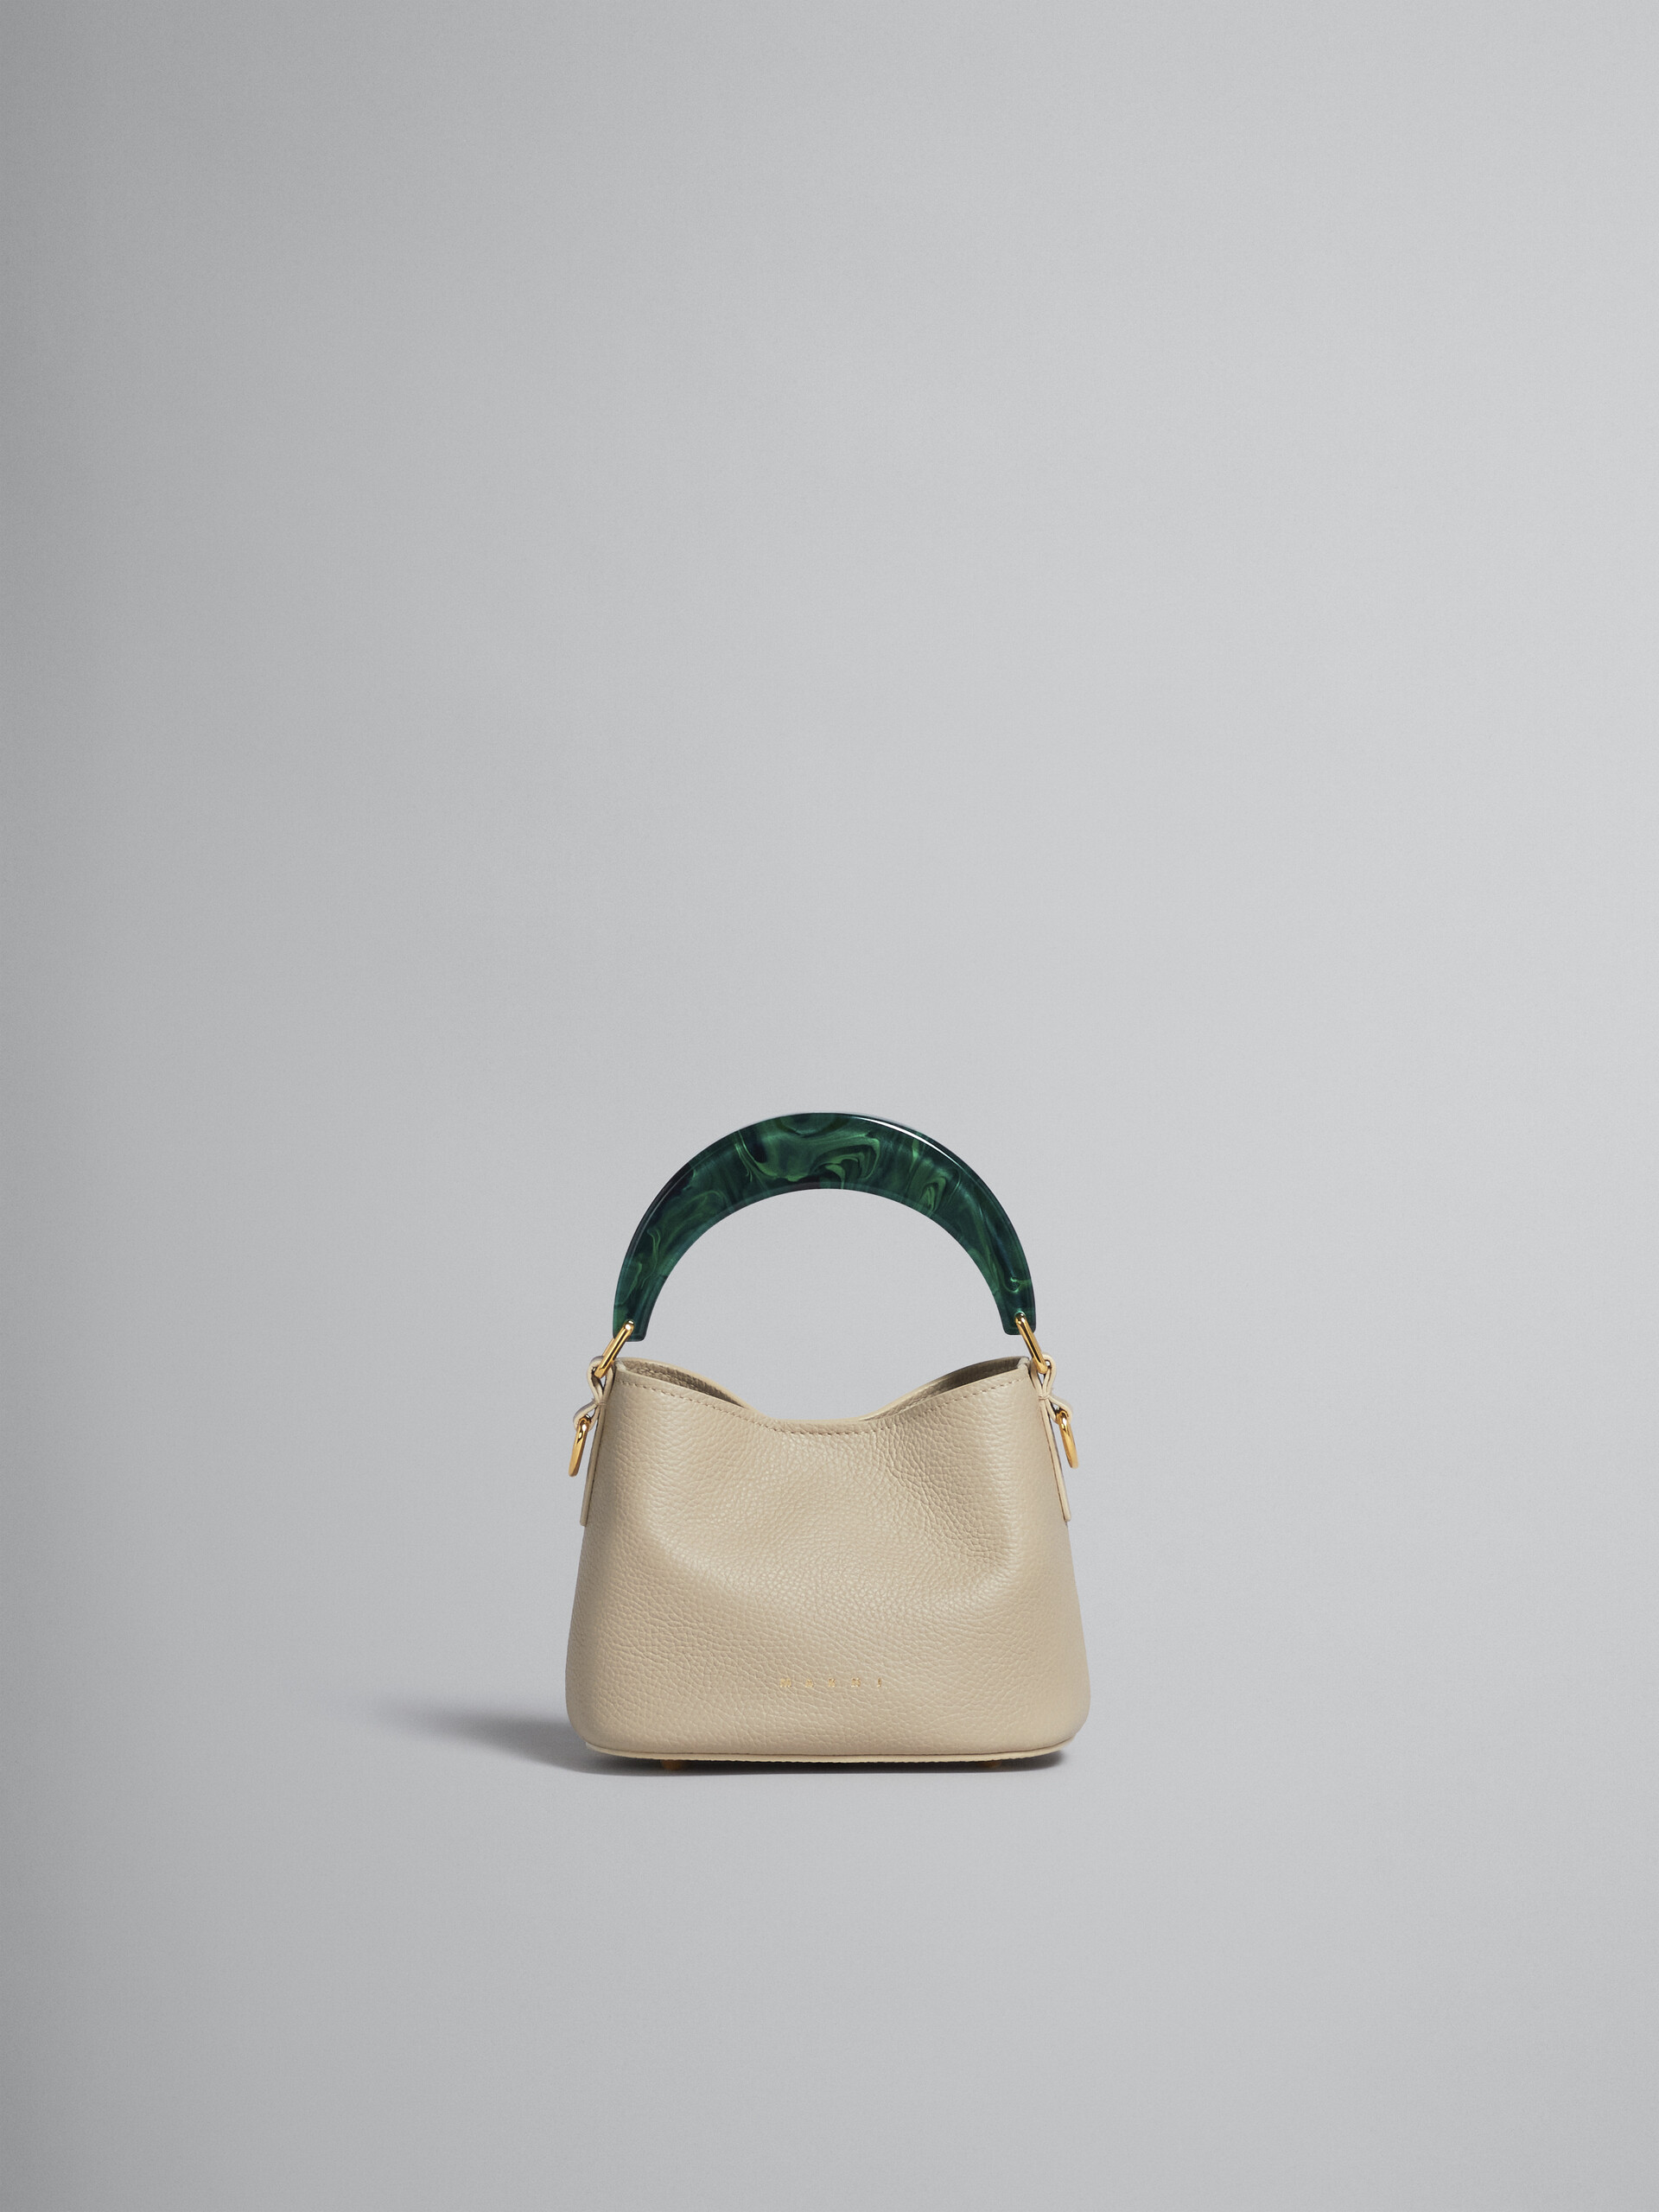 Venice Mini Bucket Bag in beige leather - Shoulder Bag - Image 1